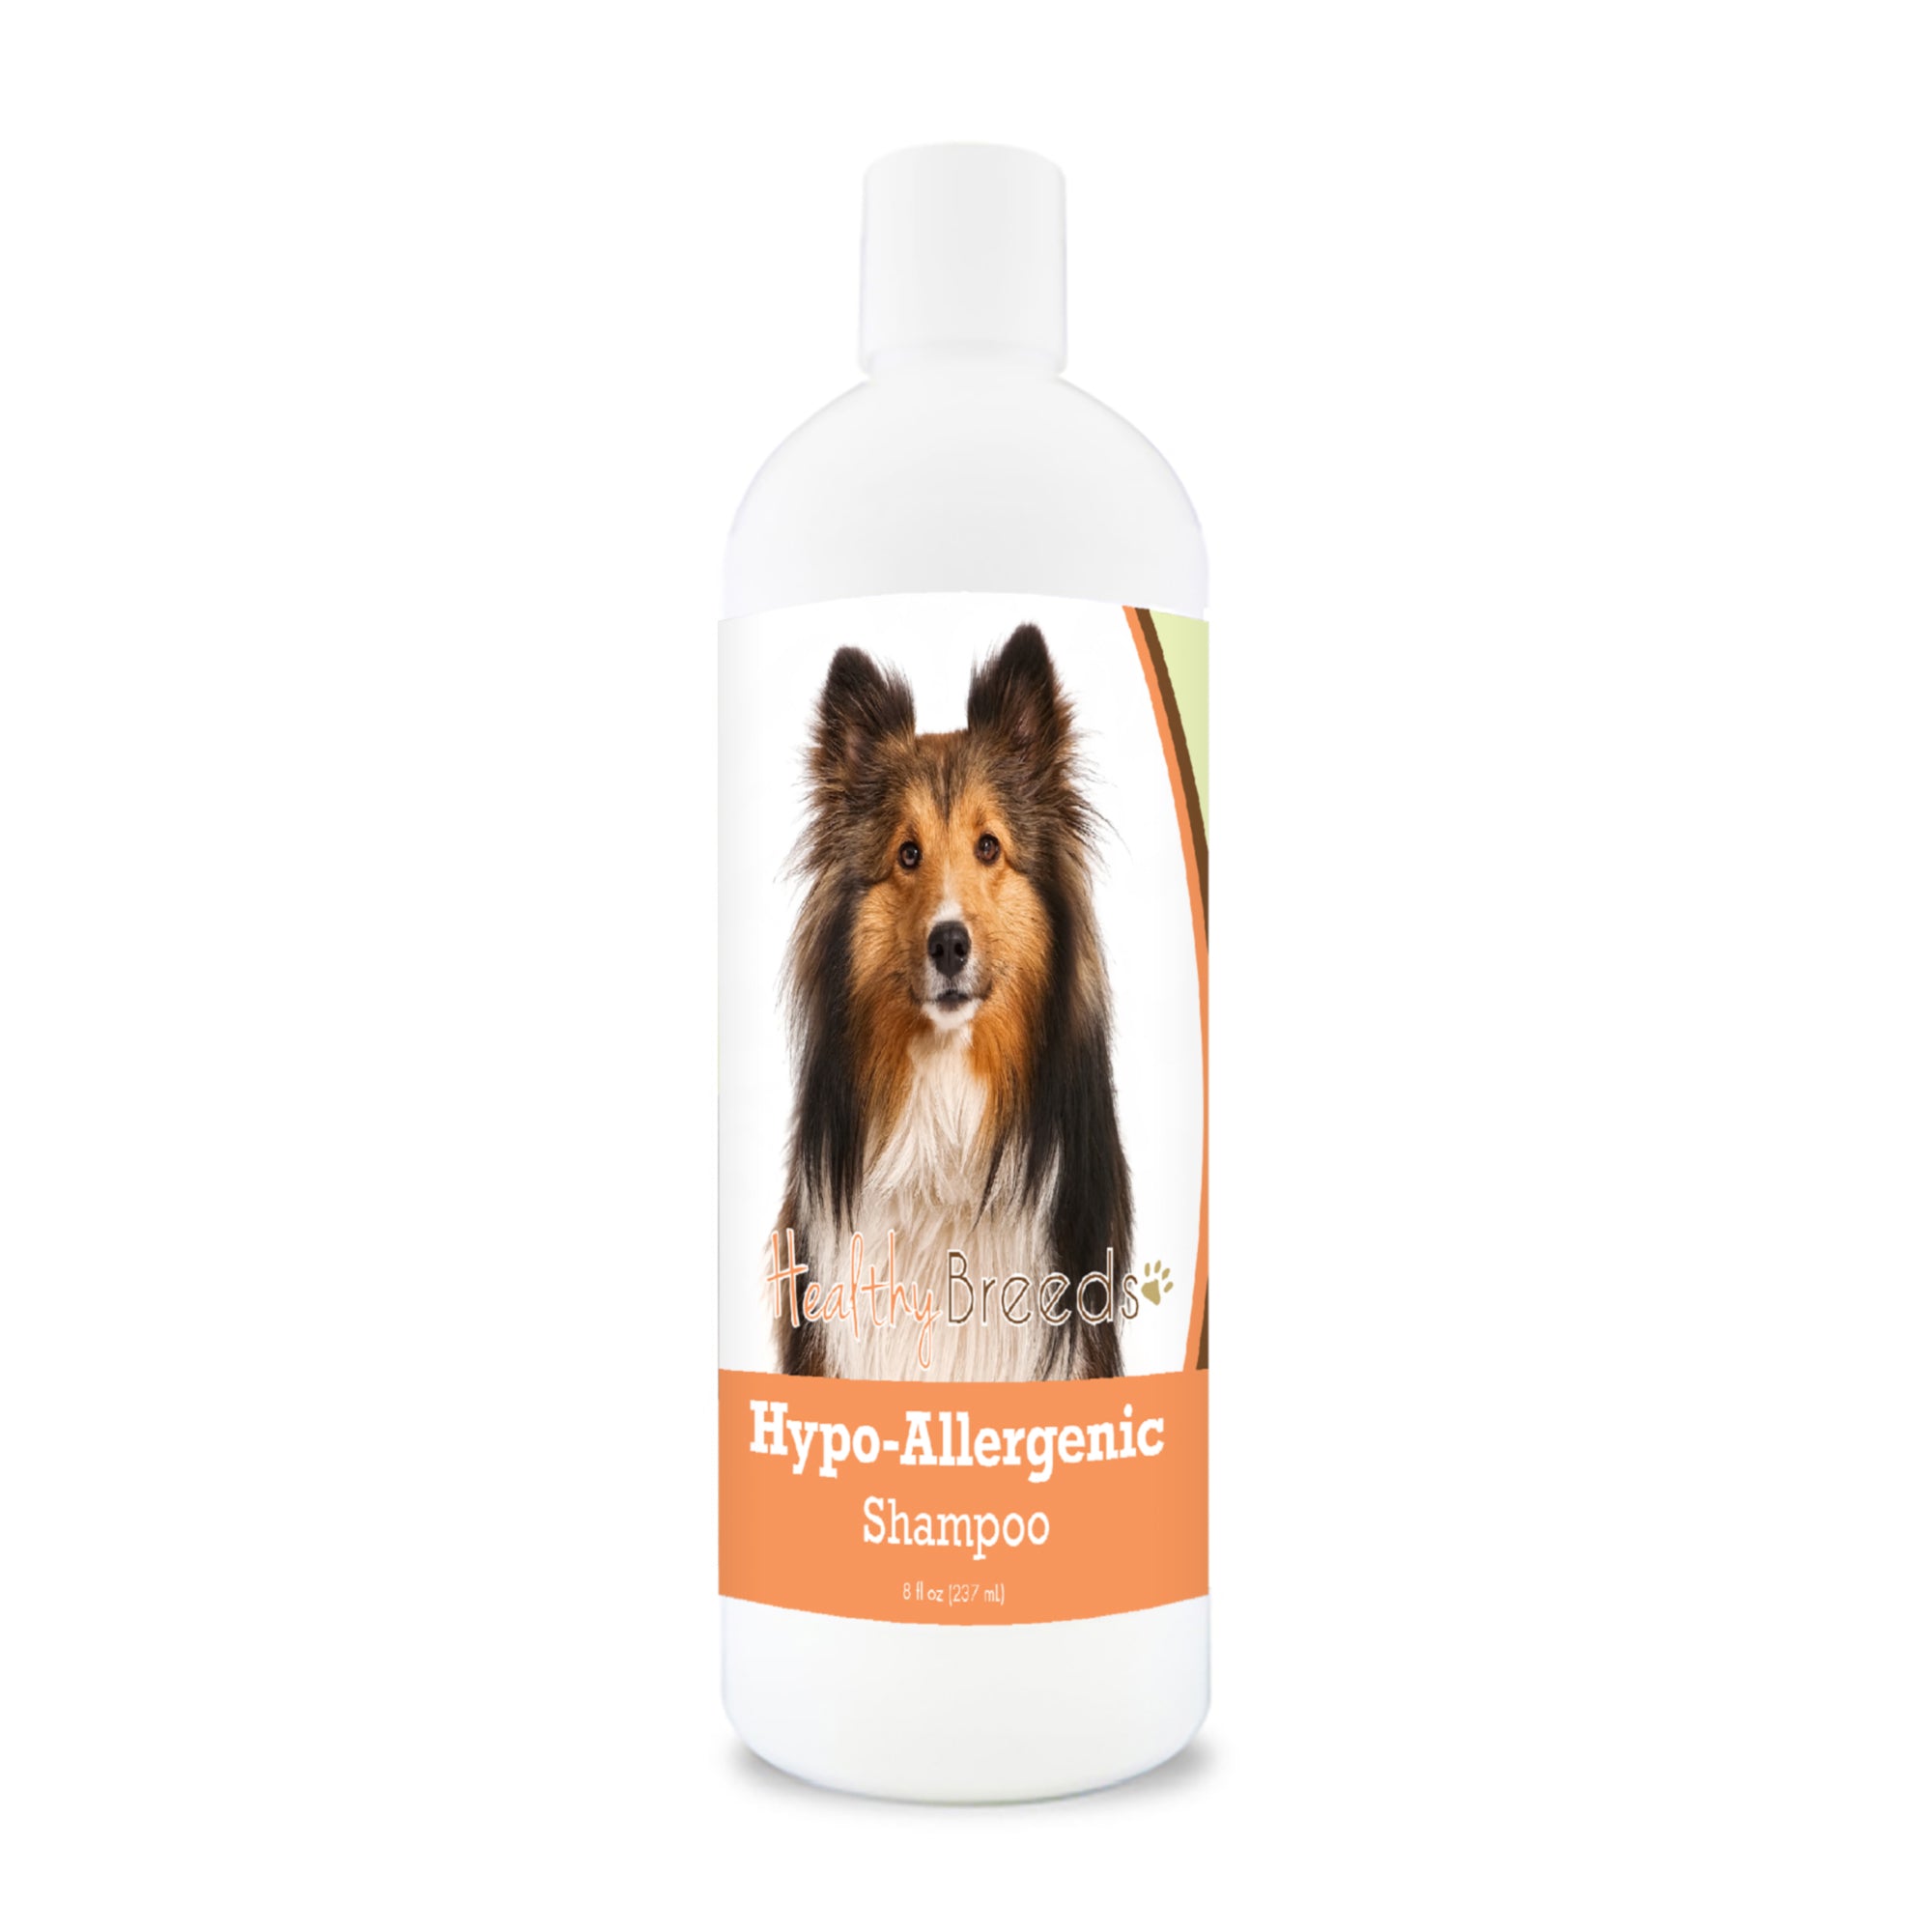 Shetland Sheepdog Hypo-Allergenic Shampoo 8 oz